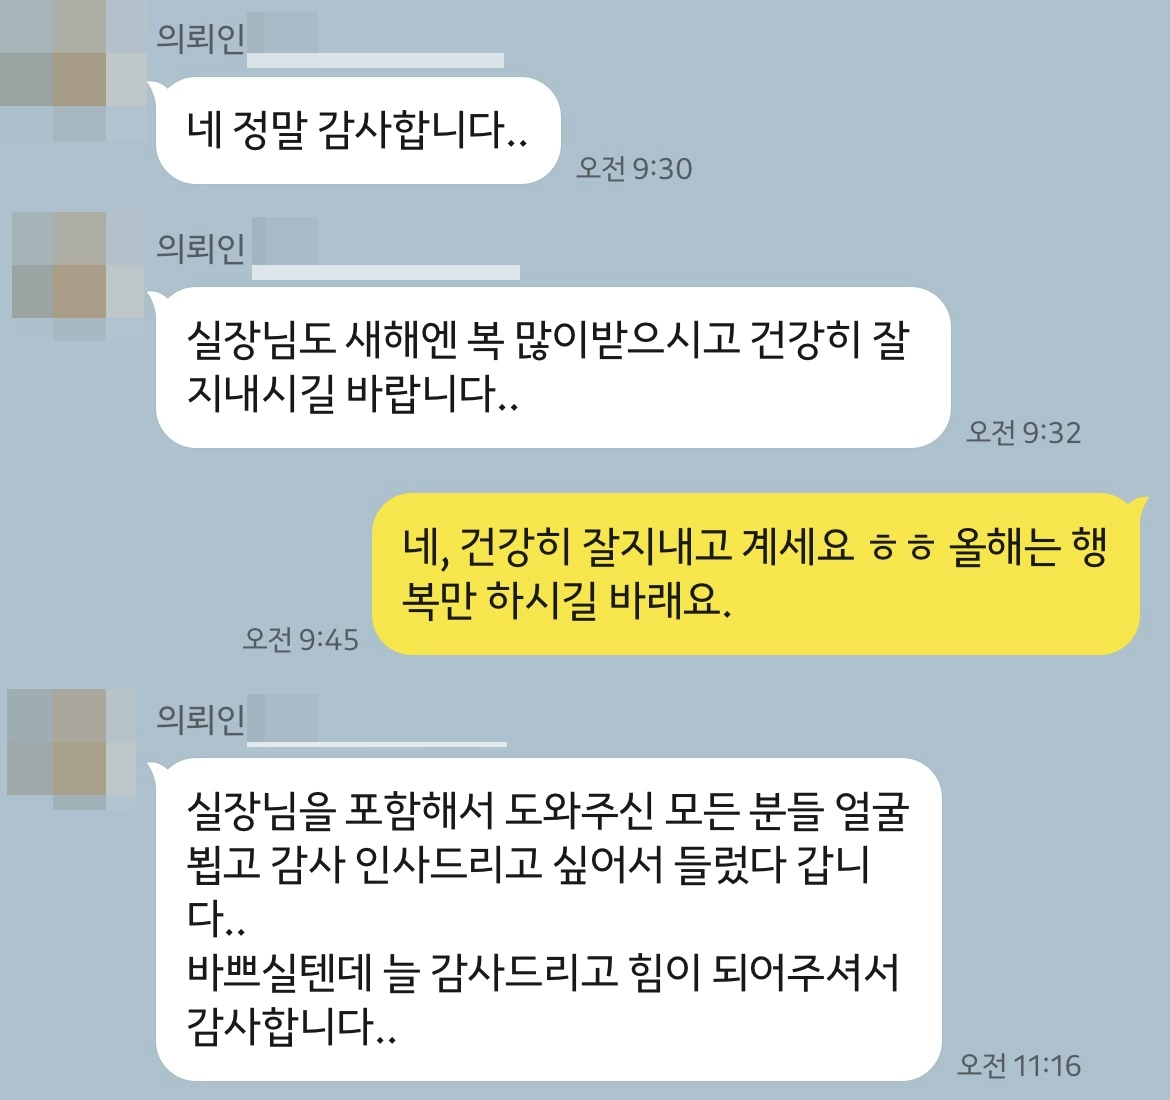 상간녀소송, 상간녀소송변호사 및 담당 사무소의 진심을 담은 조력